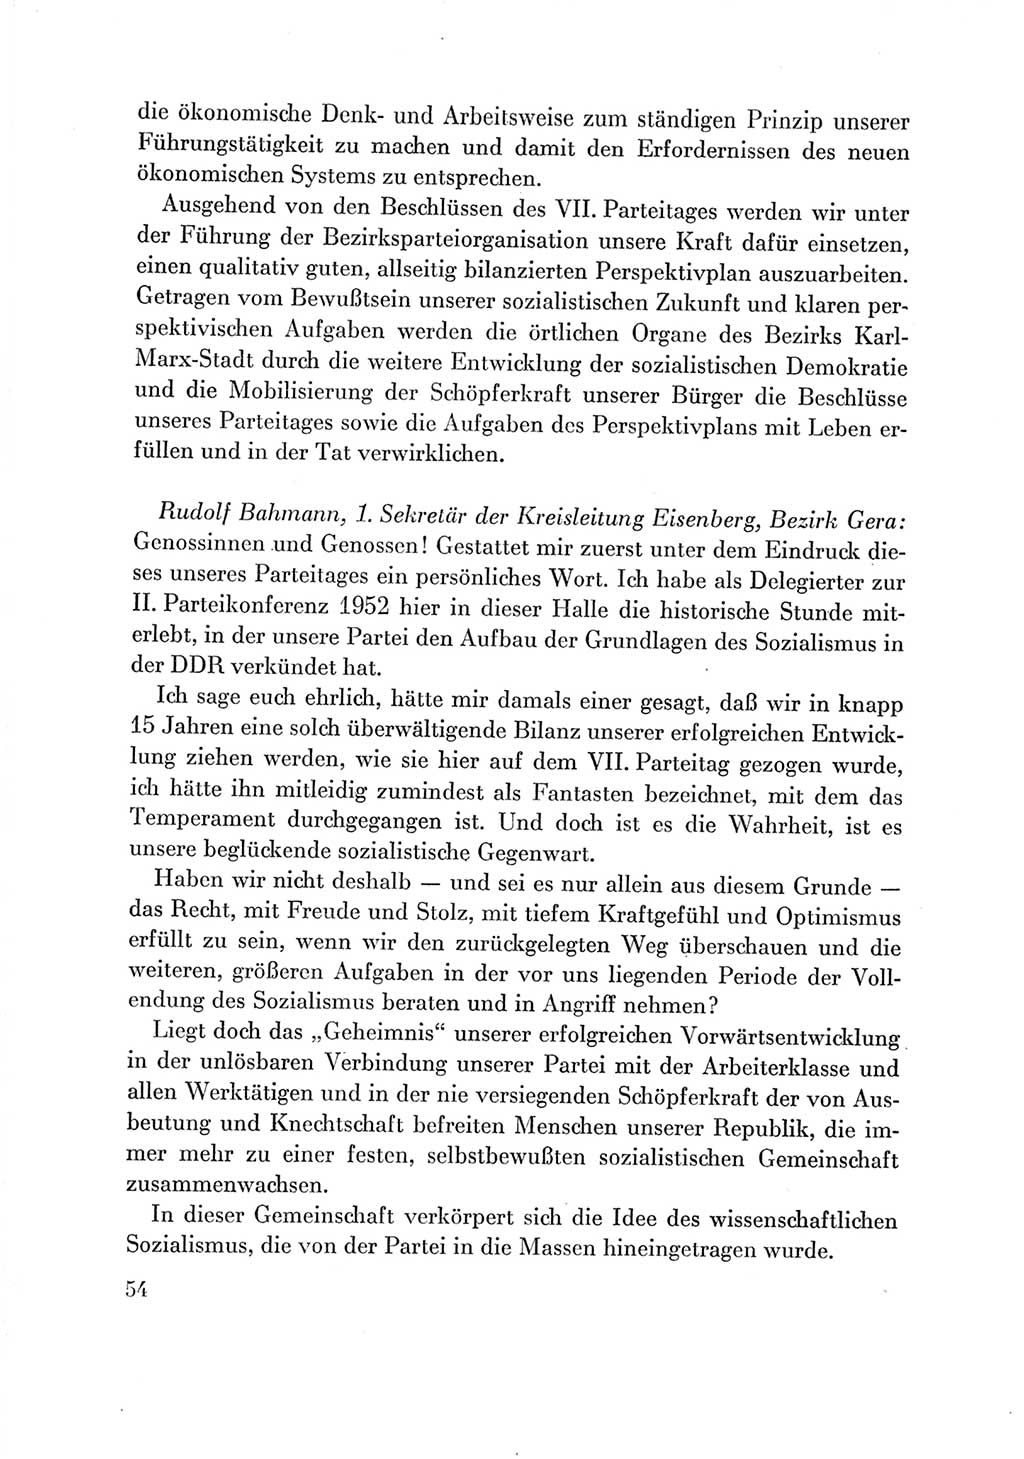 Protokoll der Verhandlungen des Ⅶ. Parteitages der Sozialistischen Einheitspartei Deutschlands (SED) [Deutsche Demokratische Republik (DDR)] 1967, Band Ⅲ, Seite 54 (Prot. Verh. Ⅶ. PT SED DDR 1967, Bd. Ⅲ, S. 54)